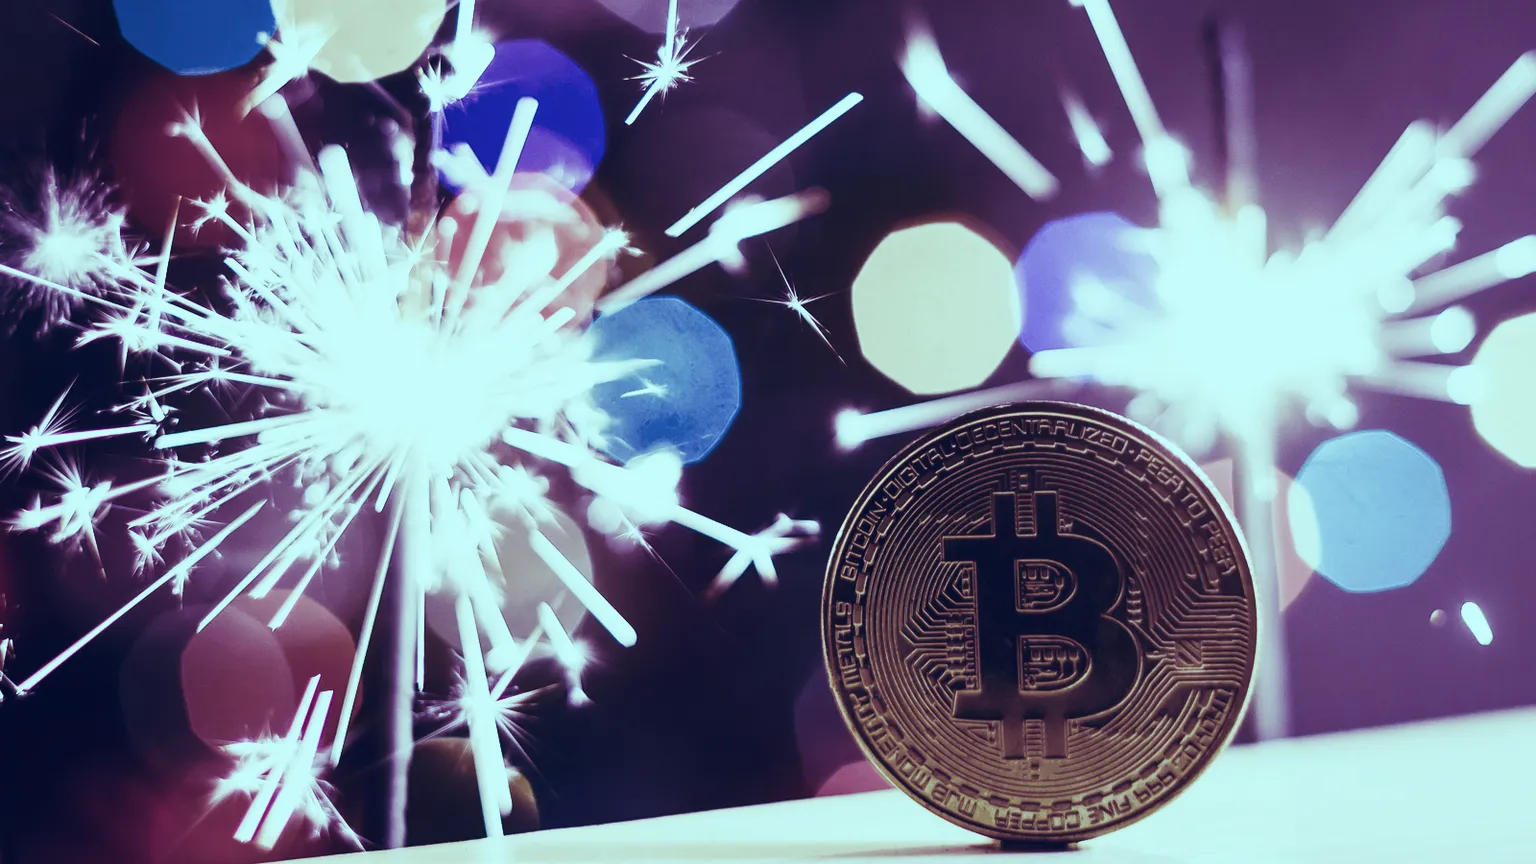 Spencer Schiff dijo que planea comprar más Bitcoin en el futuro. Imagen: Shutterstock